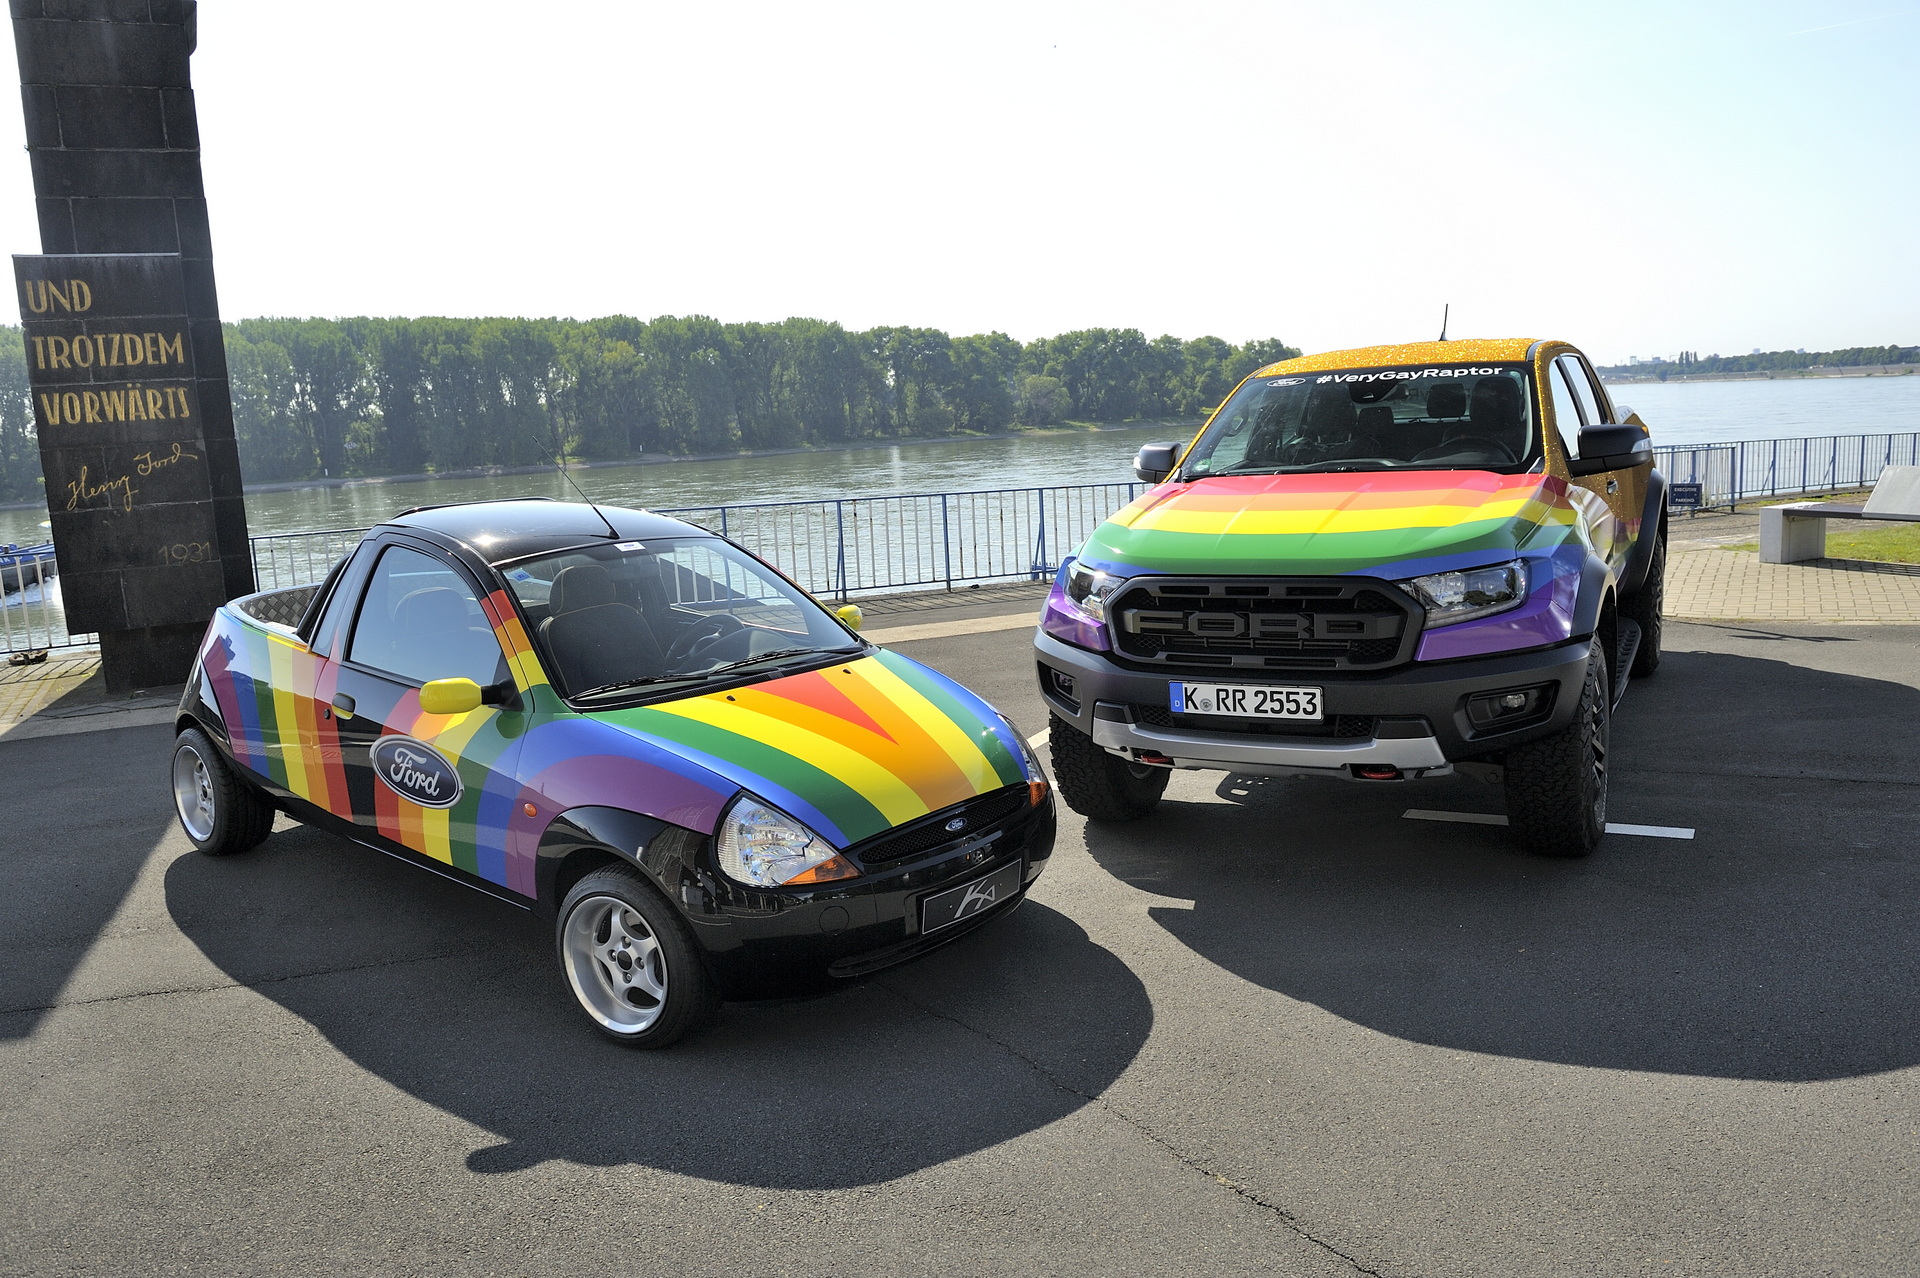 Ford Raptor sơn màu cầu vồng để biểu thị sự ủng hộ cộng đồng LGBT. Bên cạnh là một chiếc Ford KA được độ thành bán tải mini.